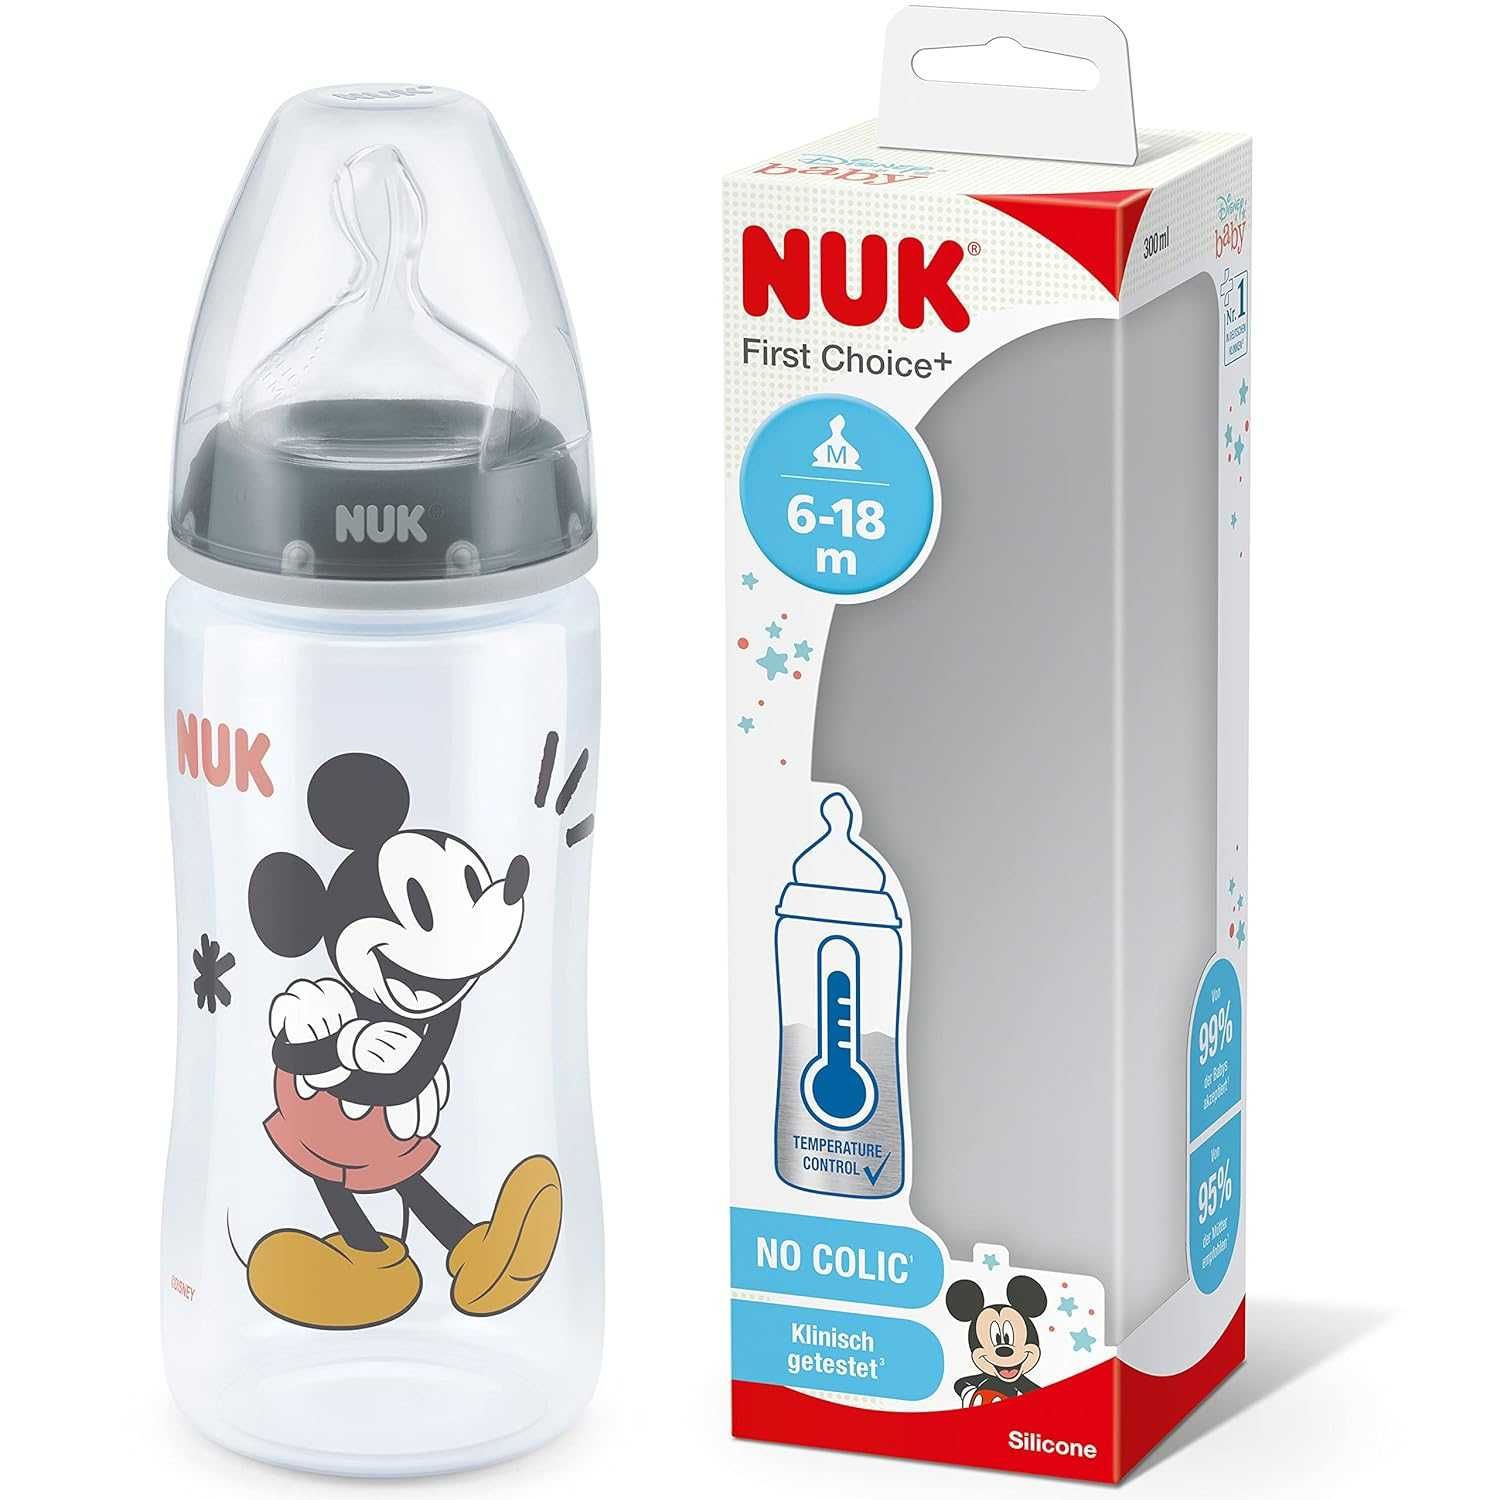 NUK First Choice+ butelka dla niemowląt | 6-18 miesięcy |